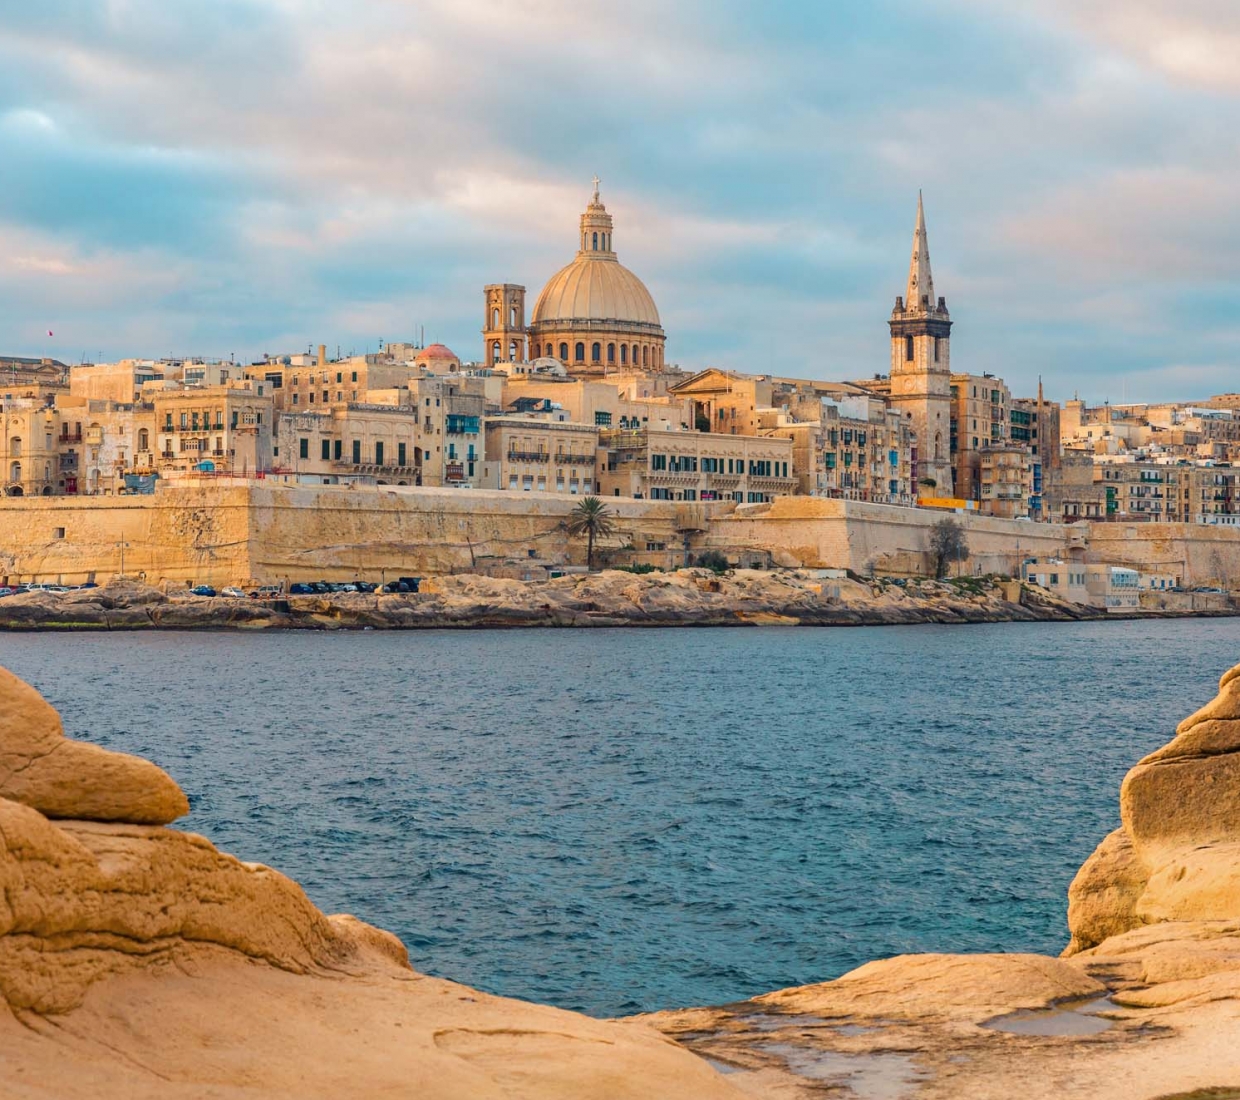 Seleção dos melhores e mais bonitos hotéis e casas de férias em Malta